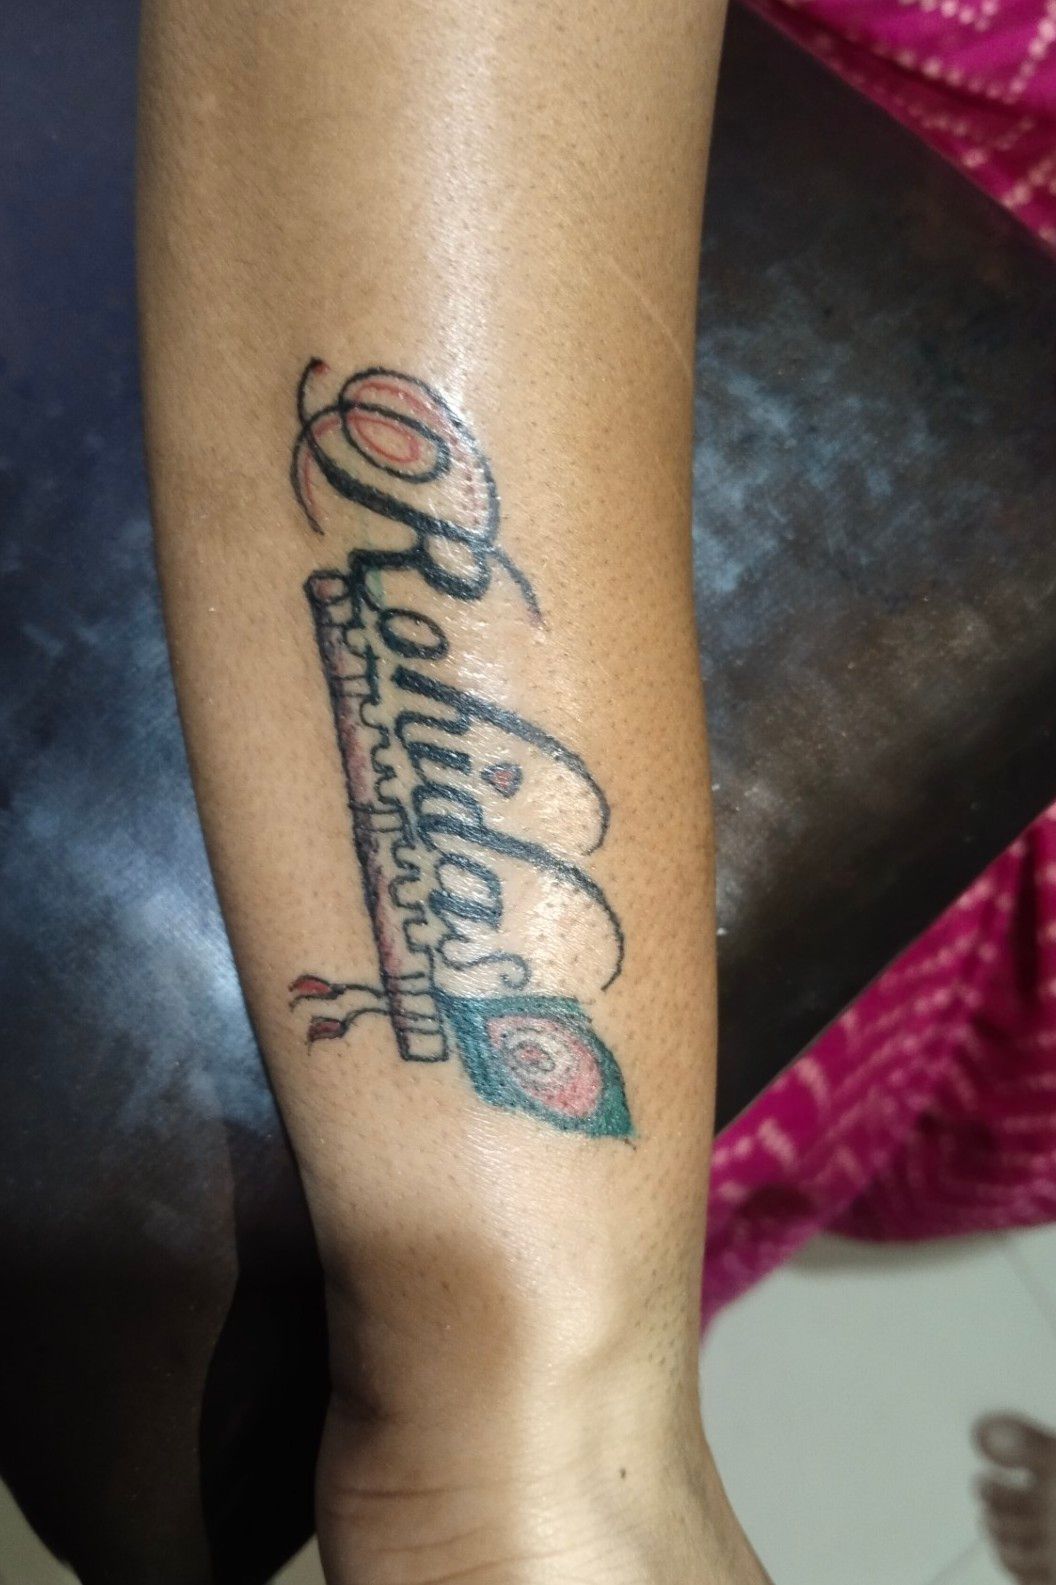 Tattoo uploaded by Rohith Pradeep • Harry potter • Tattoodo